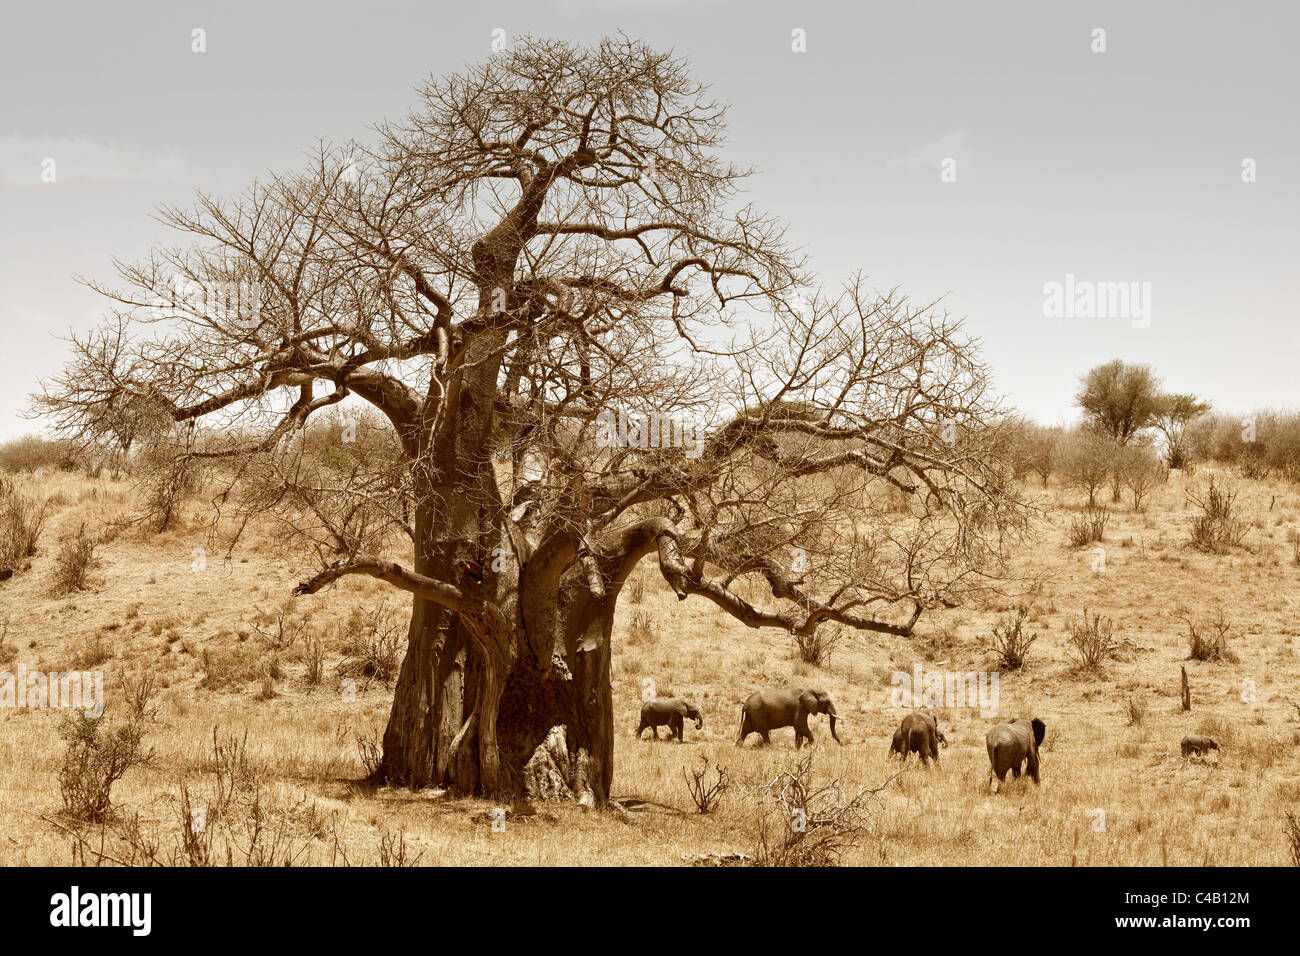 La Tanzanie, Tarangire. Un troupeau d'éléphants passe devant un énorme baobab. Les deux sont ce qui rend célèbre de Tarangire. Banque D'Images